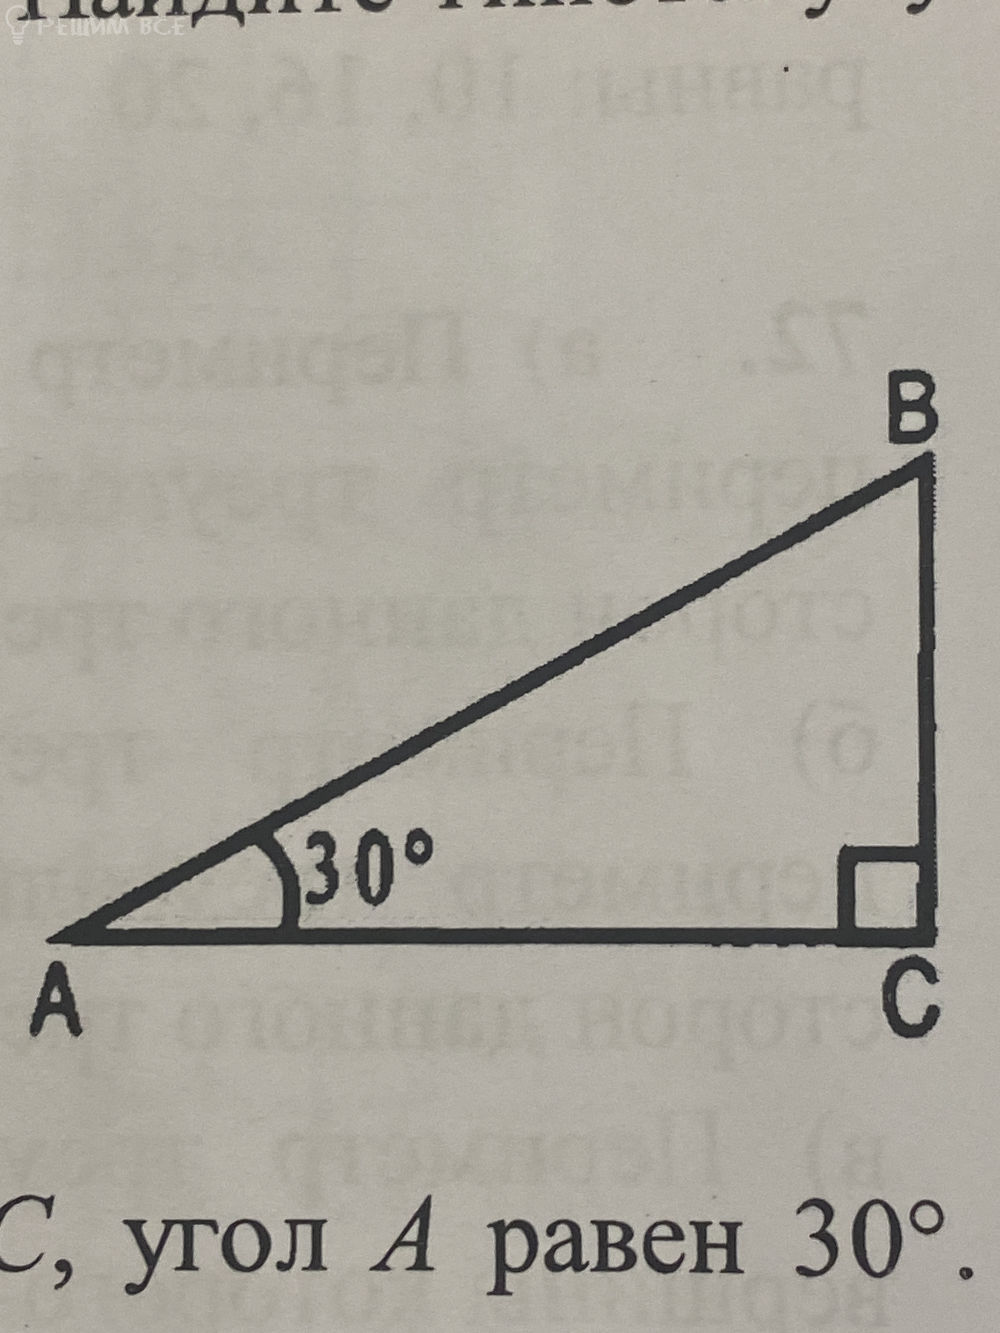 В прямоугольном треугольнике дсе проведена